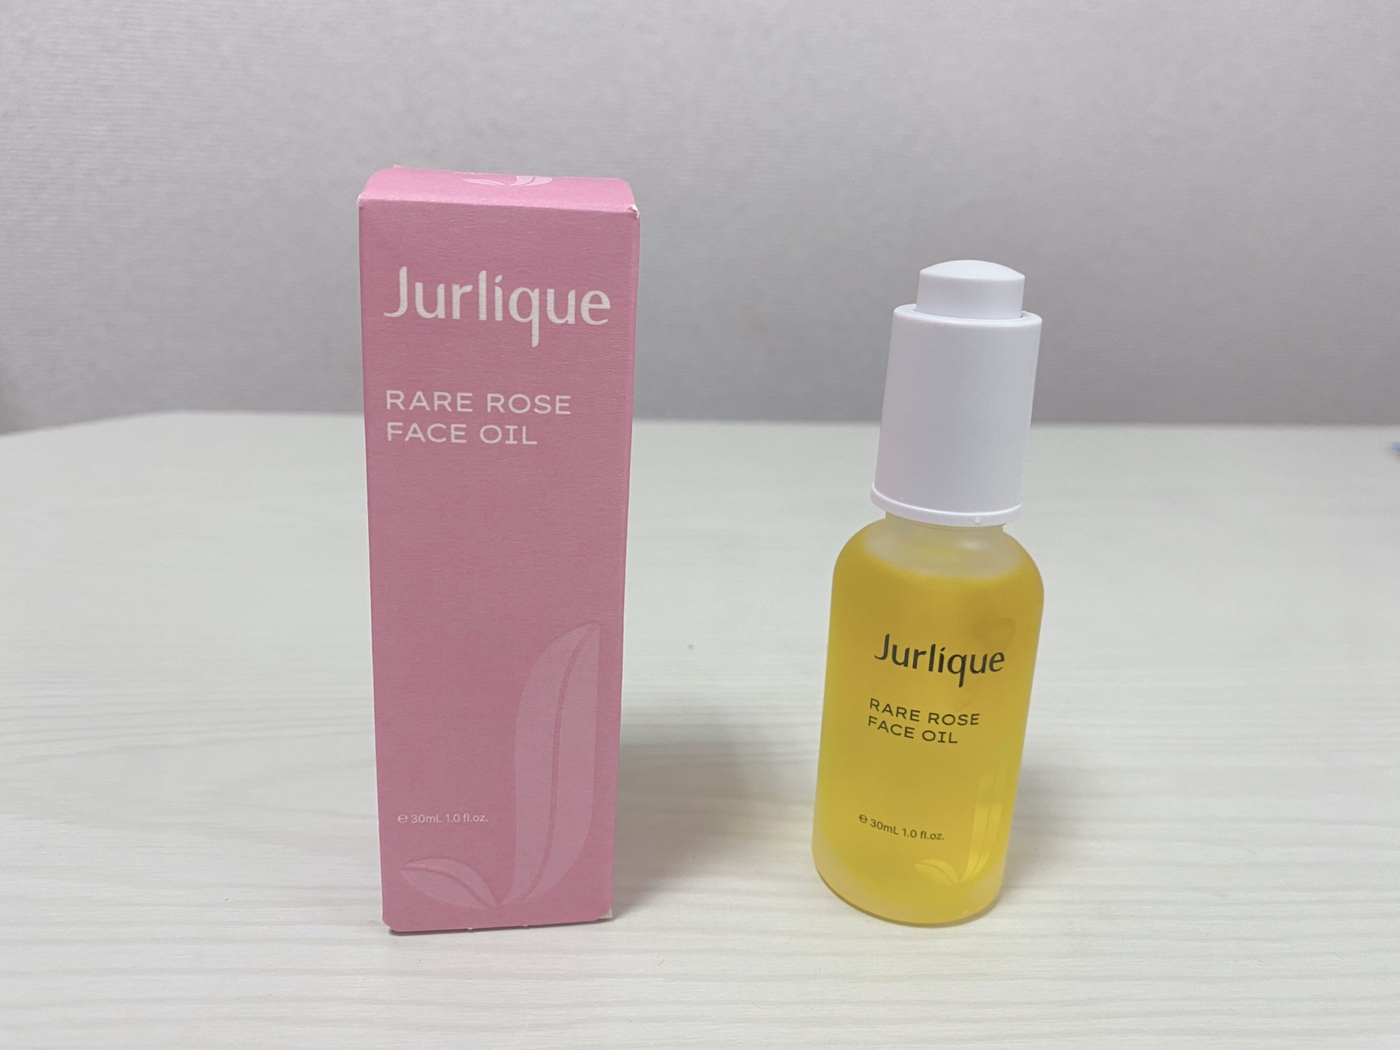 Jurlique（ジュリーク）の美容オイル『RO フェイスオイル』を実証